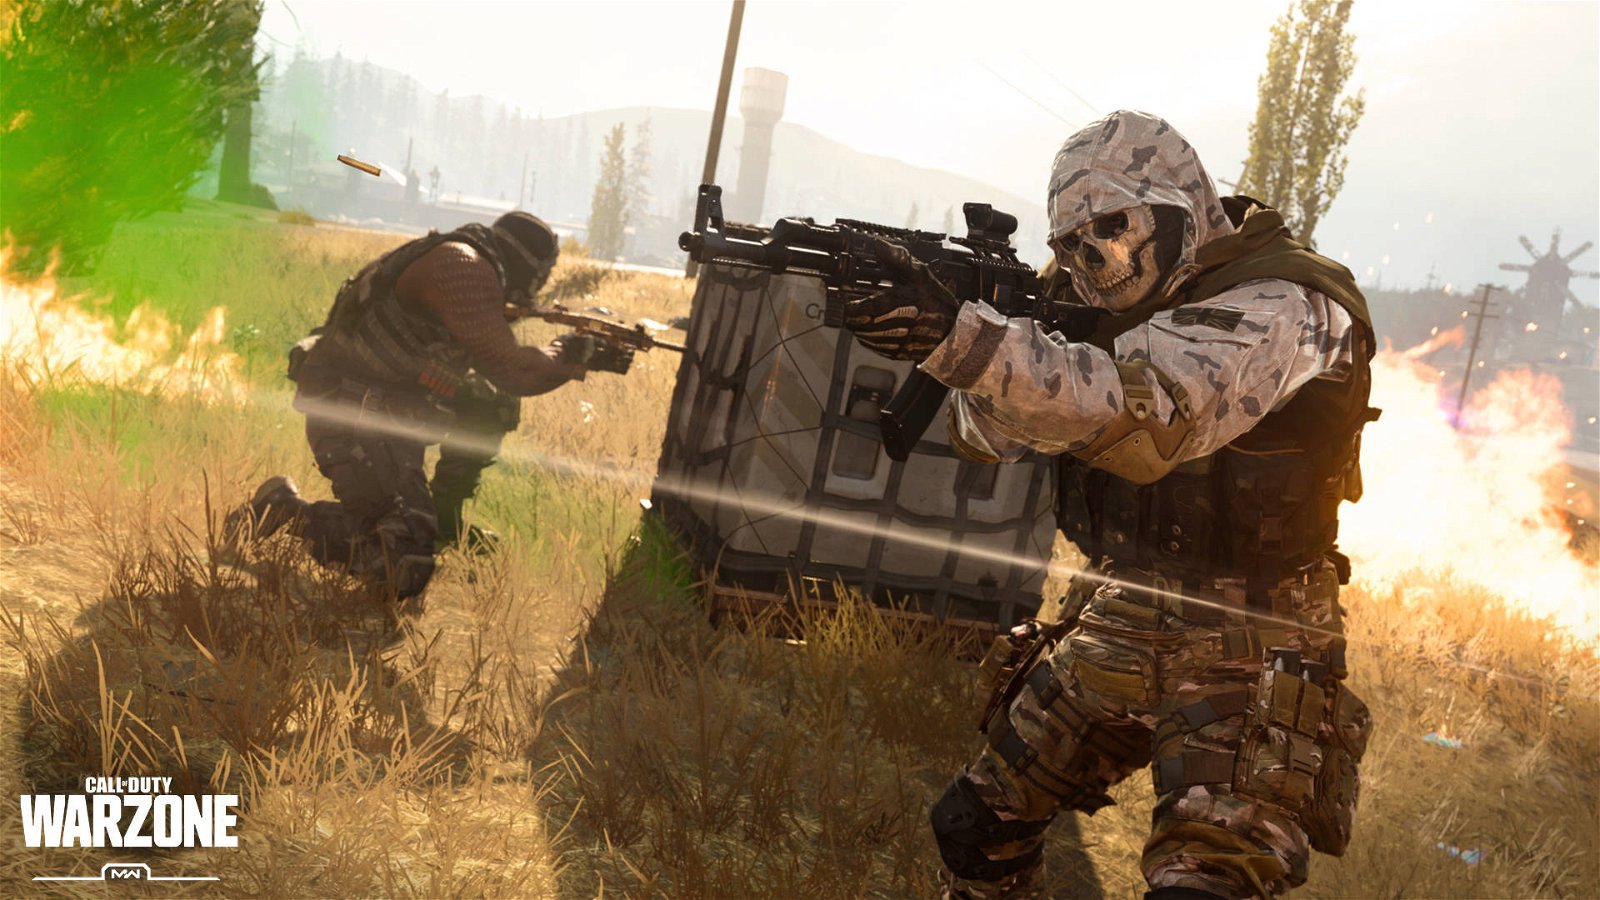 Immagine di Call of Duty Warzone svelerà il nuovo COD in arrivo a fine 2020 secondo i rumor